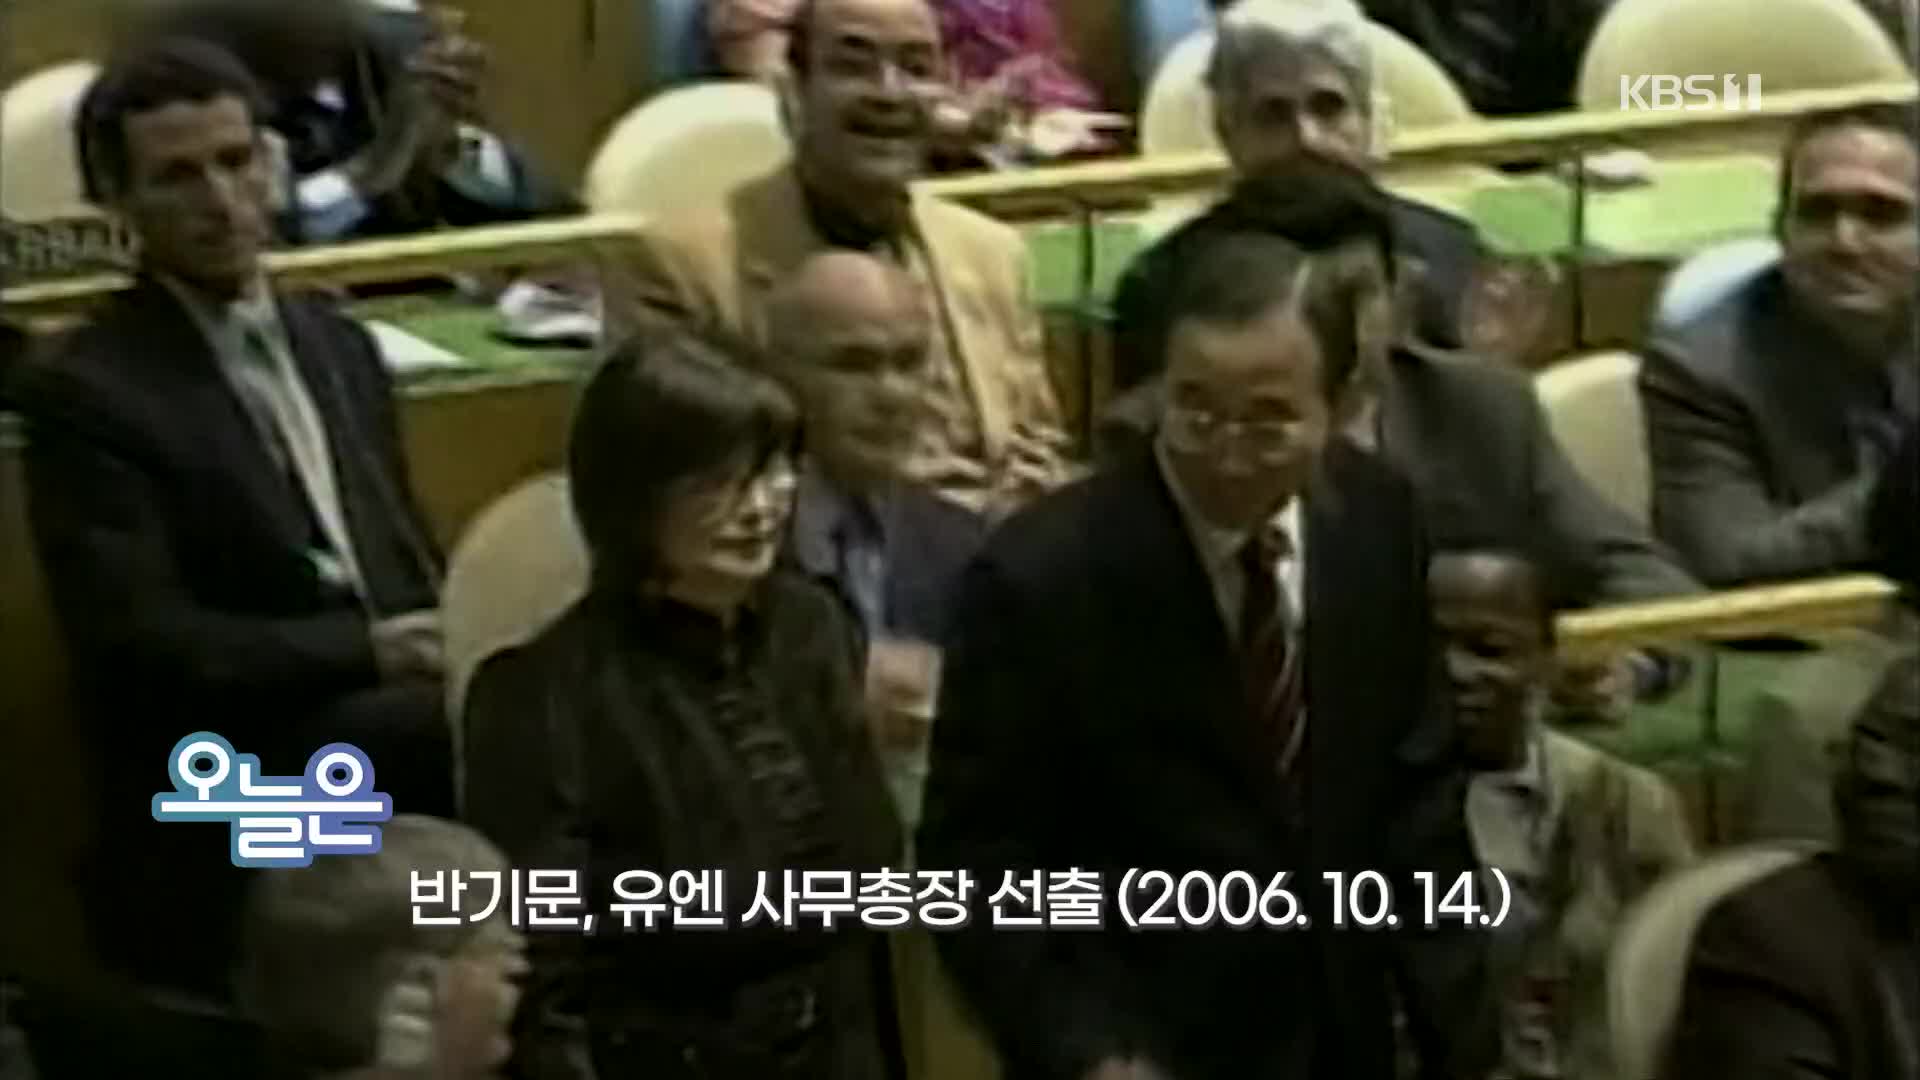 [오늘은] 반기문, 유엔 사무총장 선출 (2006.10.14.)